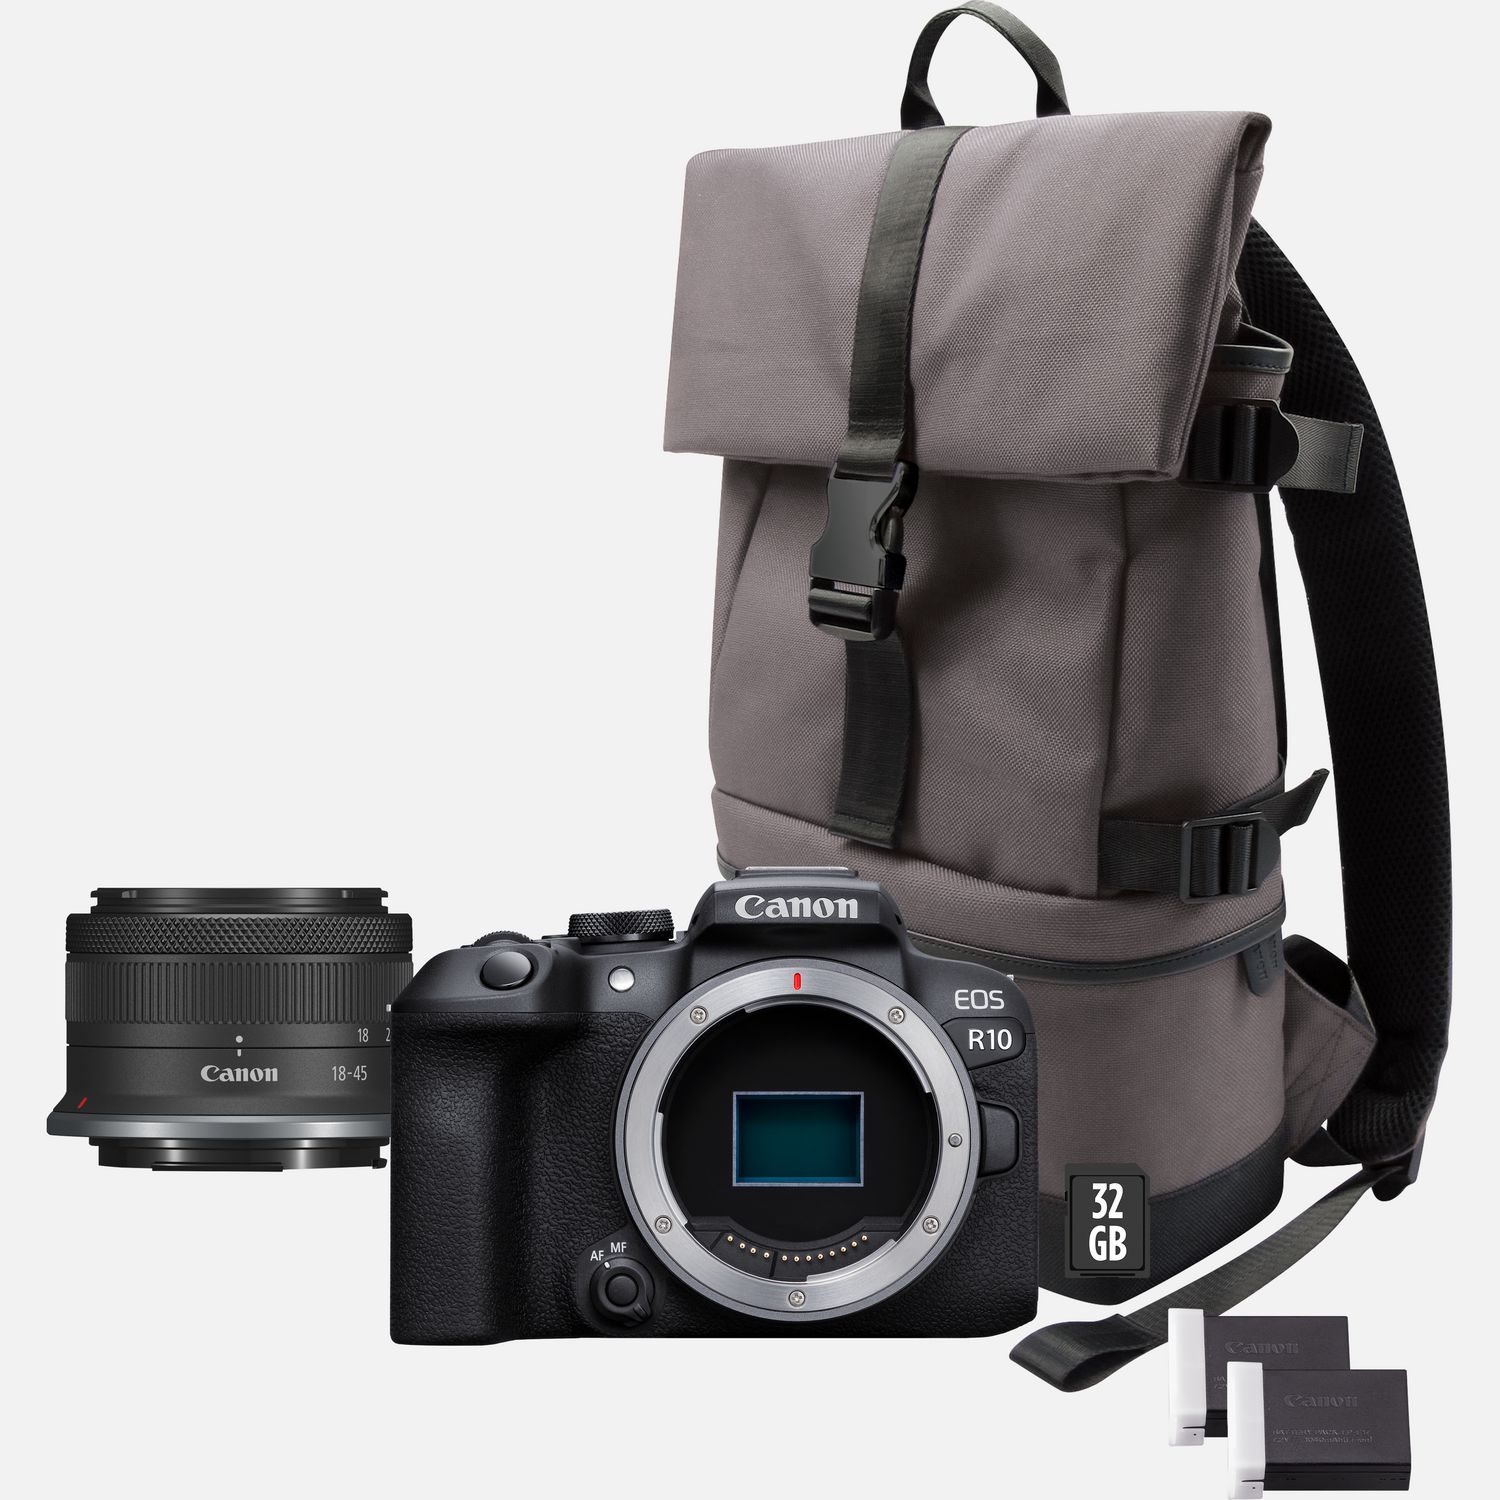 Image of Fotocamera mirrorless Canon EOS R10 + obiettivo RF-S 18-45mm F4.5-6.3 IS STM + zaino + scheda SD + batteria aggiuntiva